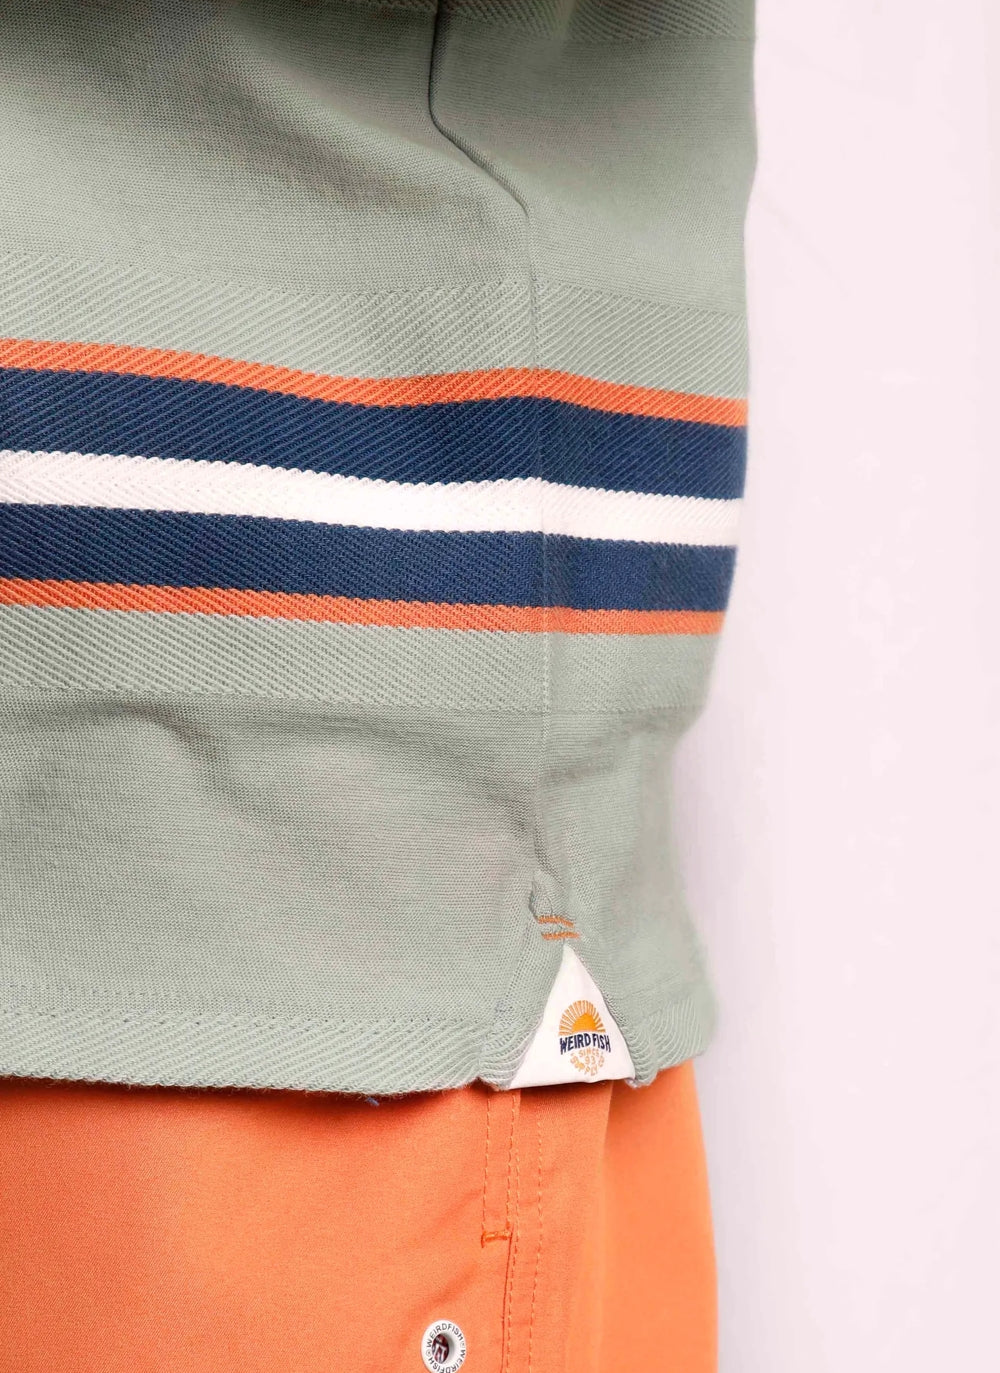 Men's Littleton Weird Fish stripe t-shirt in Pistachio with tape logo side seam detail.